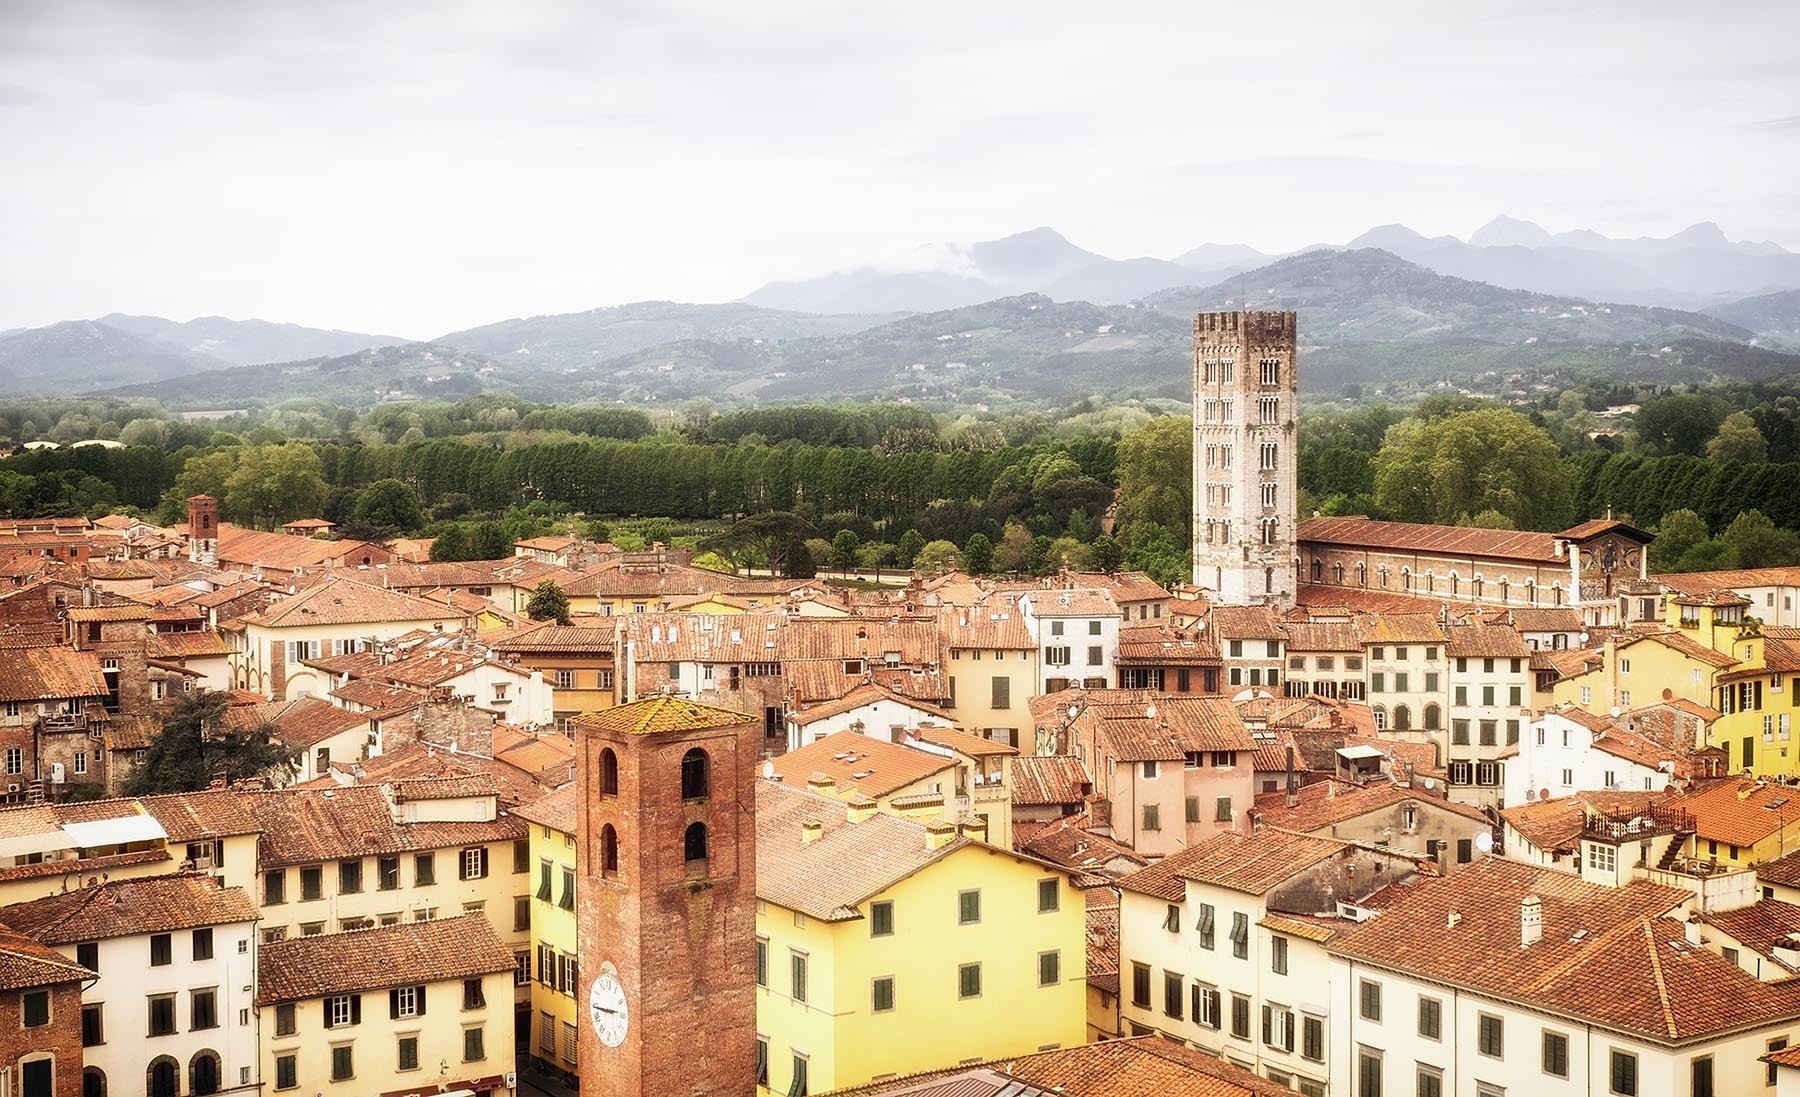 Wiosenna panorama deszczowej Lucca i okolic.